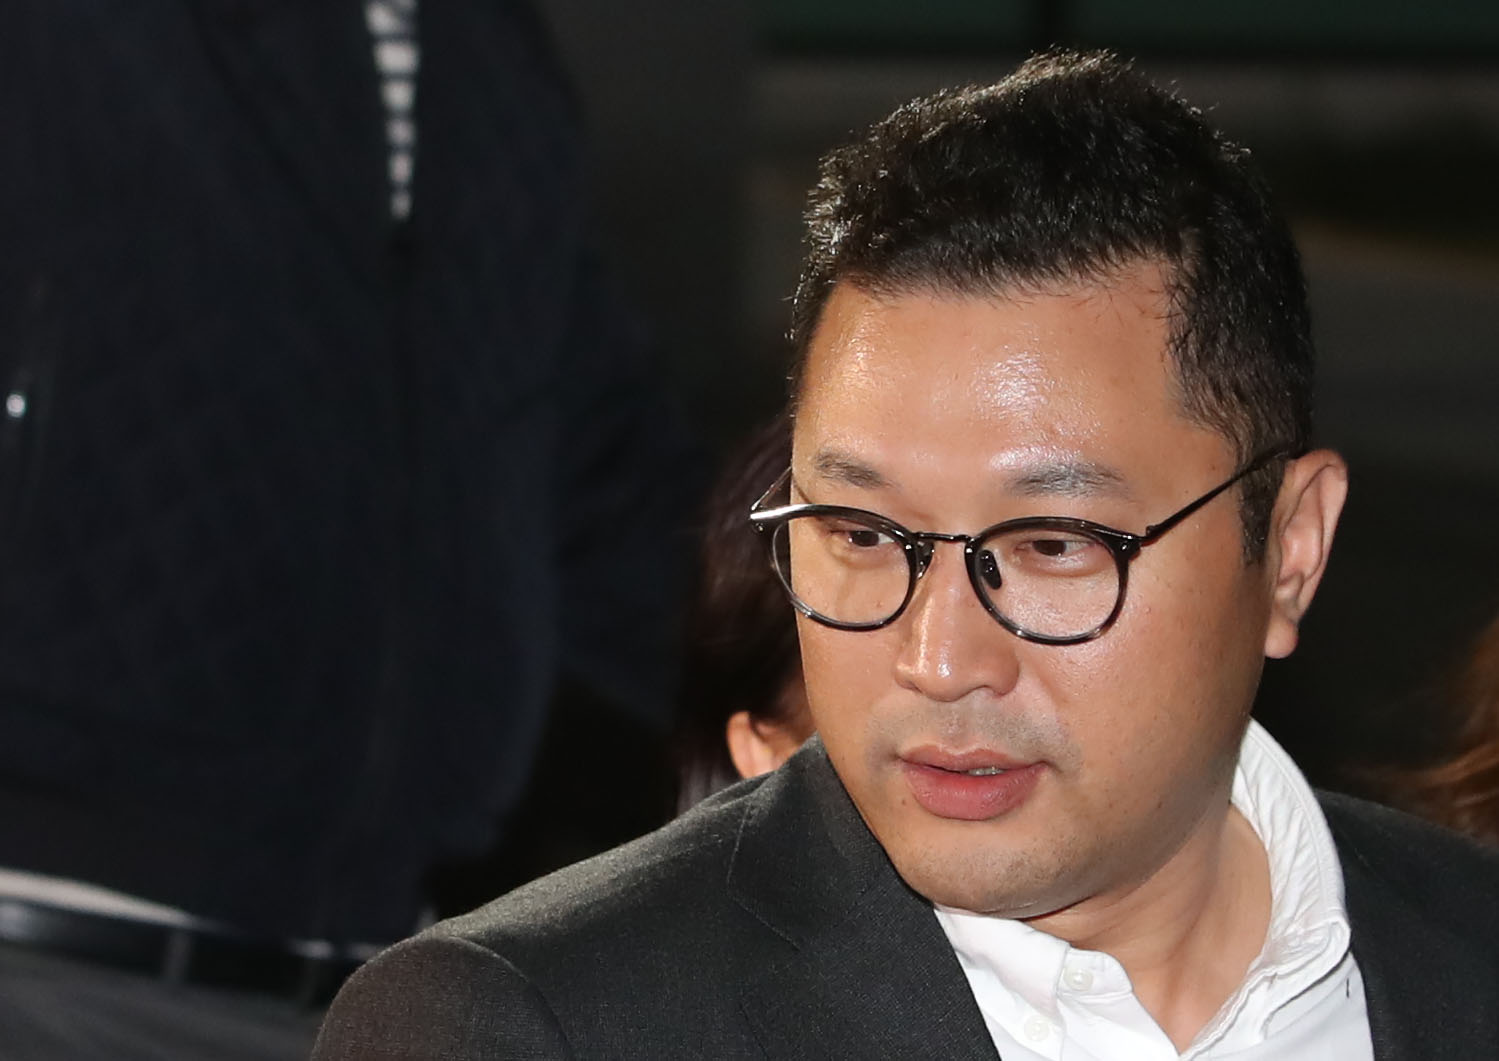 지난해 10월 19일 KBS 시사프로그램 '추적60분'이 자신의 명예를 훼손했다며 고소한 이명박 전 대통령 아들 시형씨가 서울동부지검에서 고소인 신분으로 조사를 받은 뒤 청사를 나서고 있다.